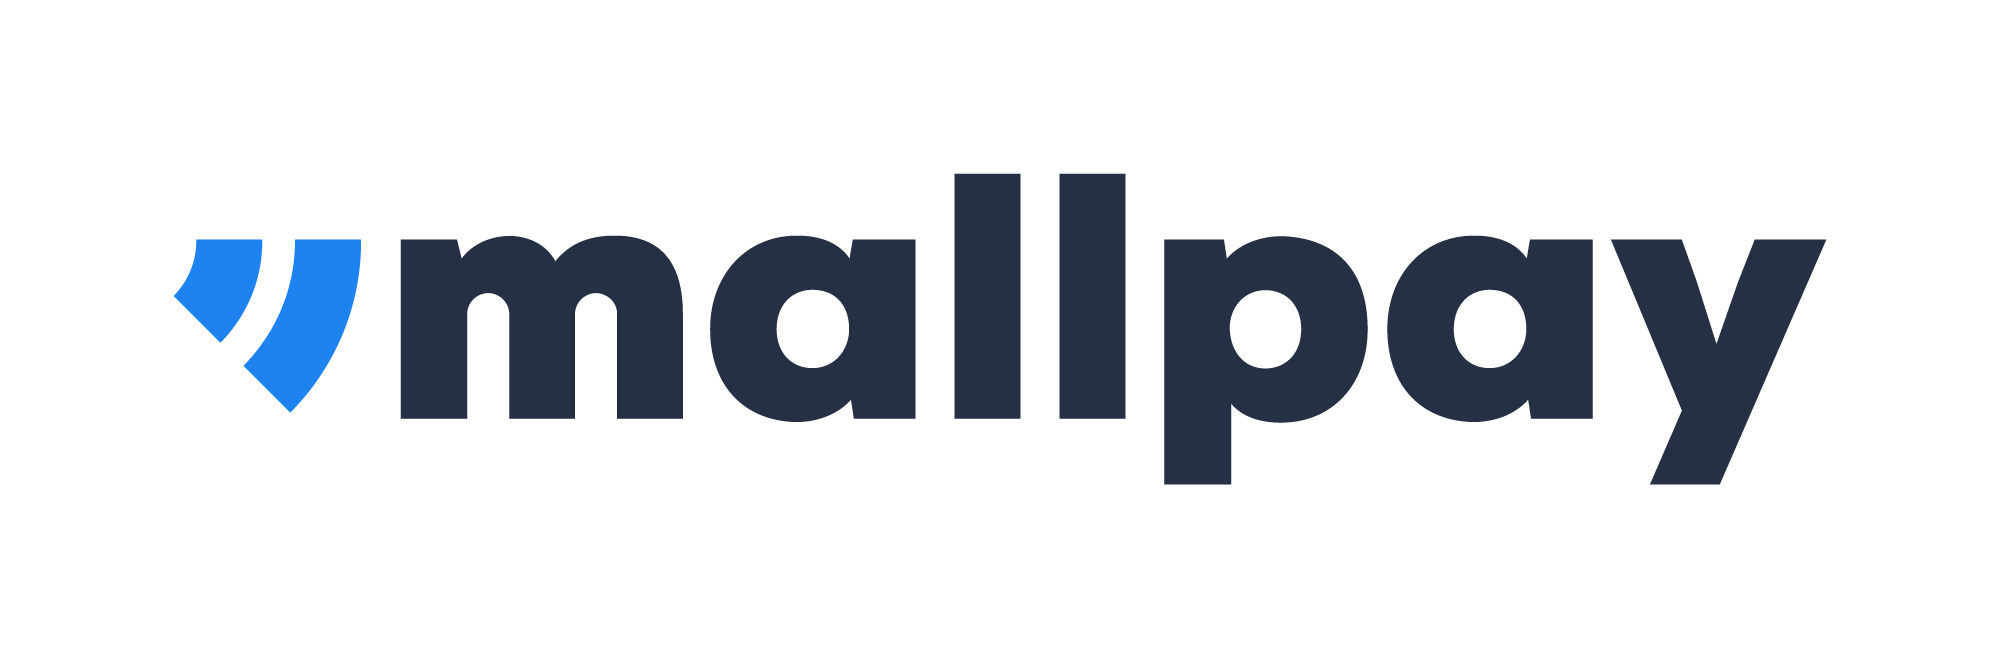 Mall Pay logo